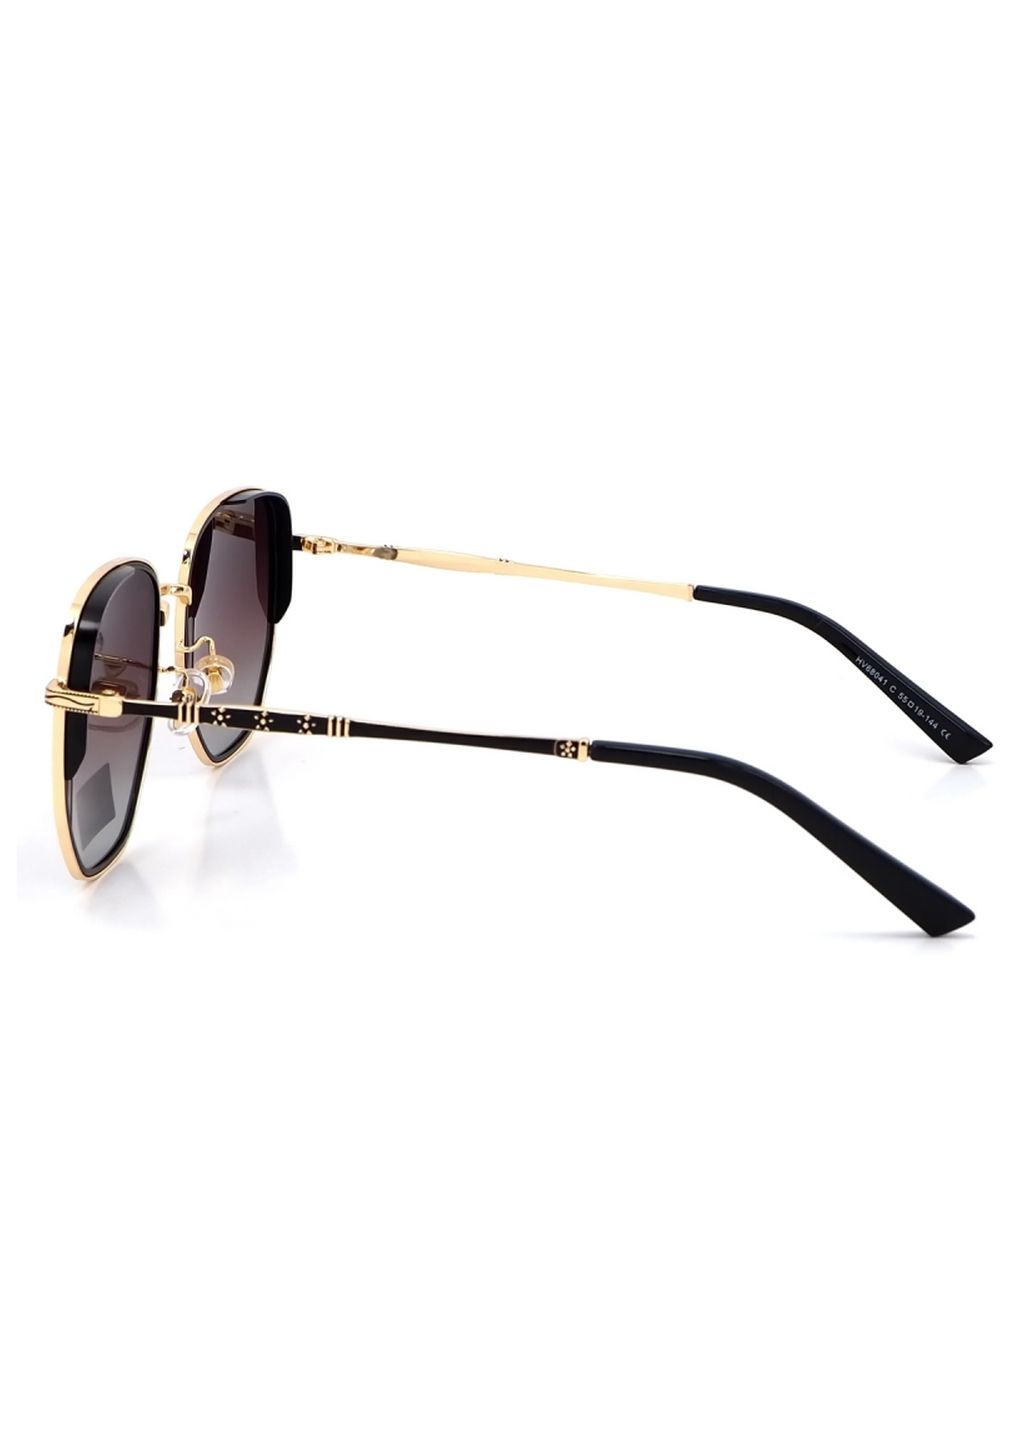 Купить Солнцезащитные очки c поляризацией HAVVS HV68041 170034 - Золотистый в интернет-магазине